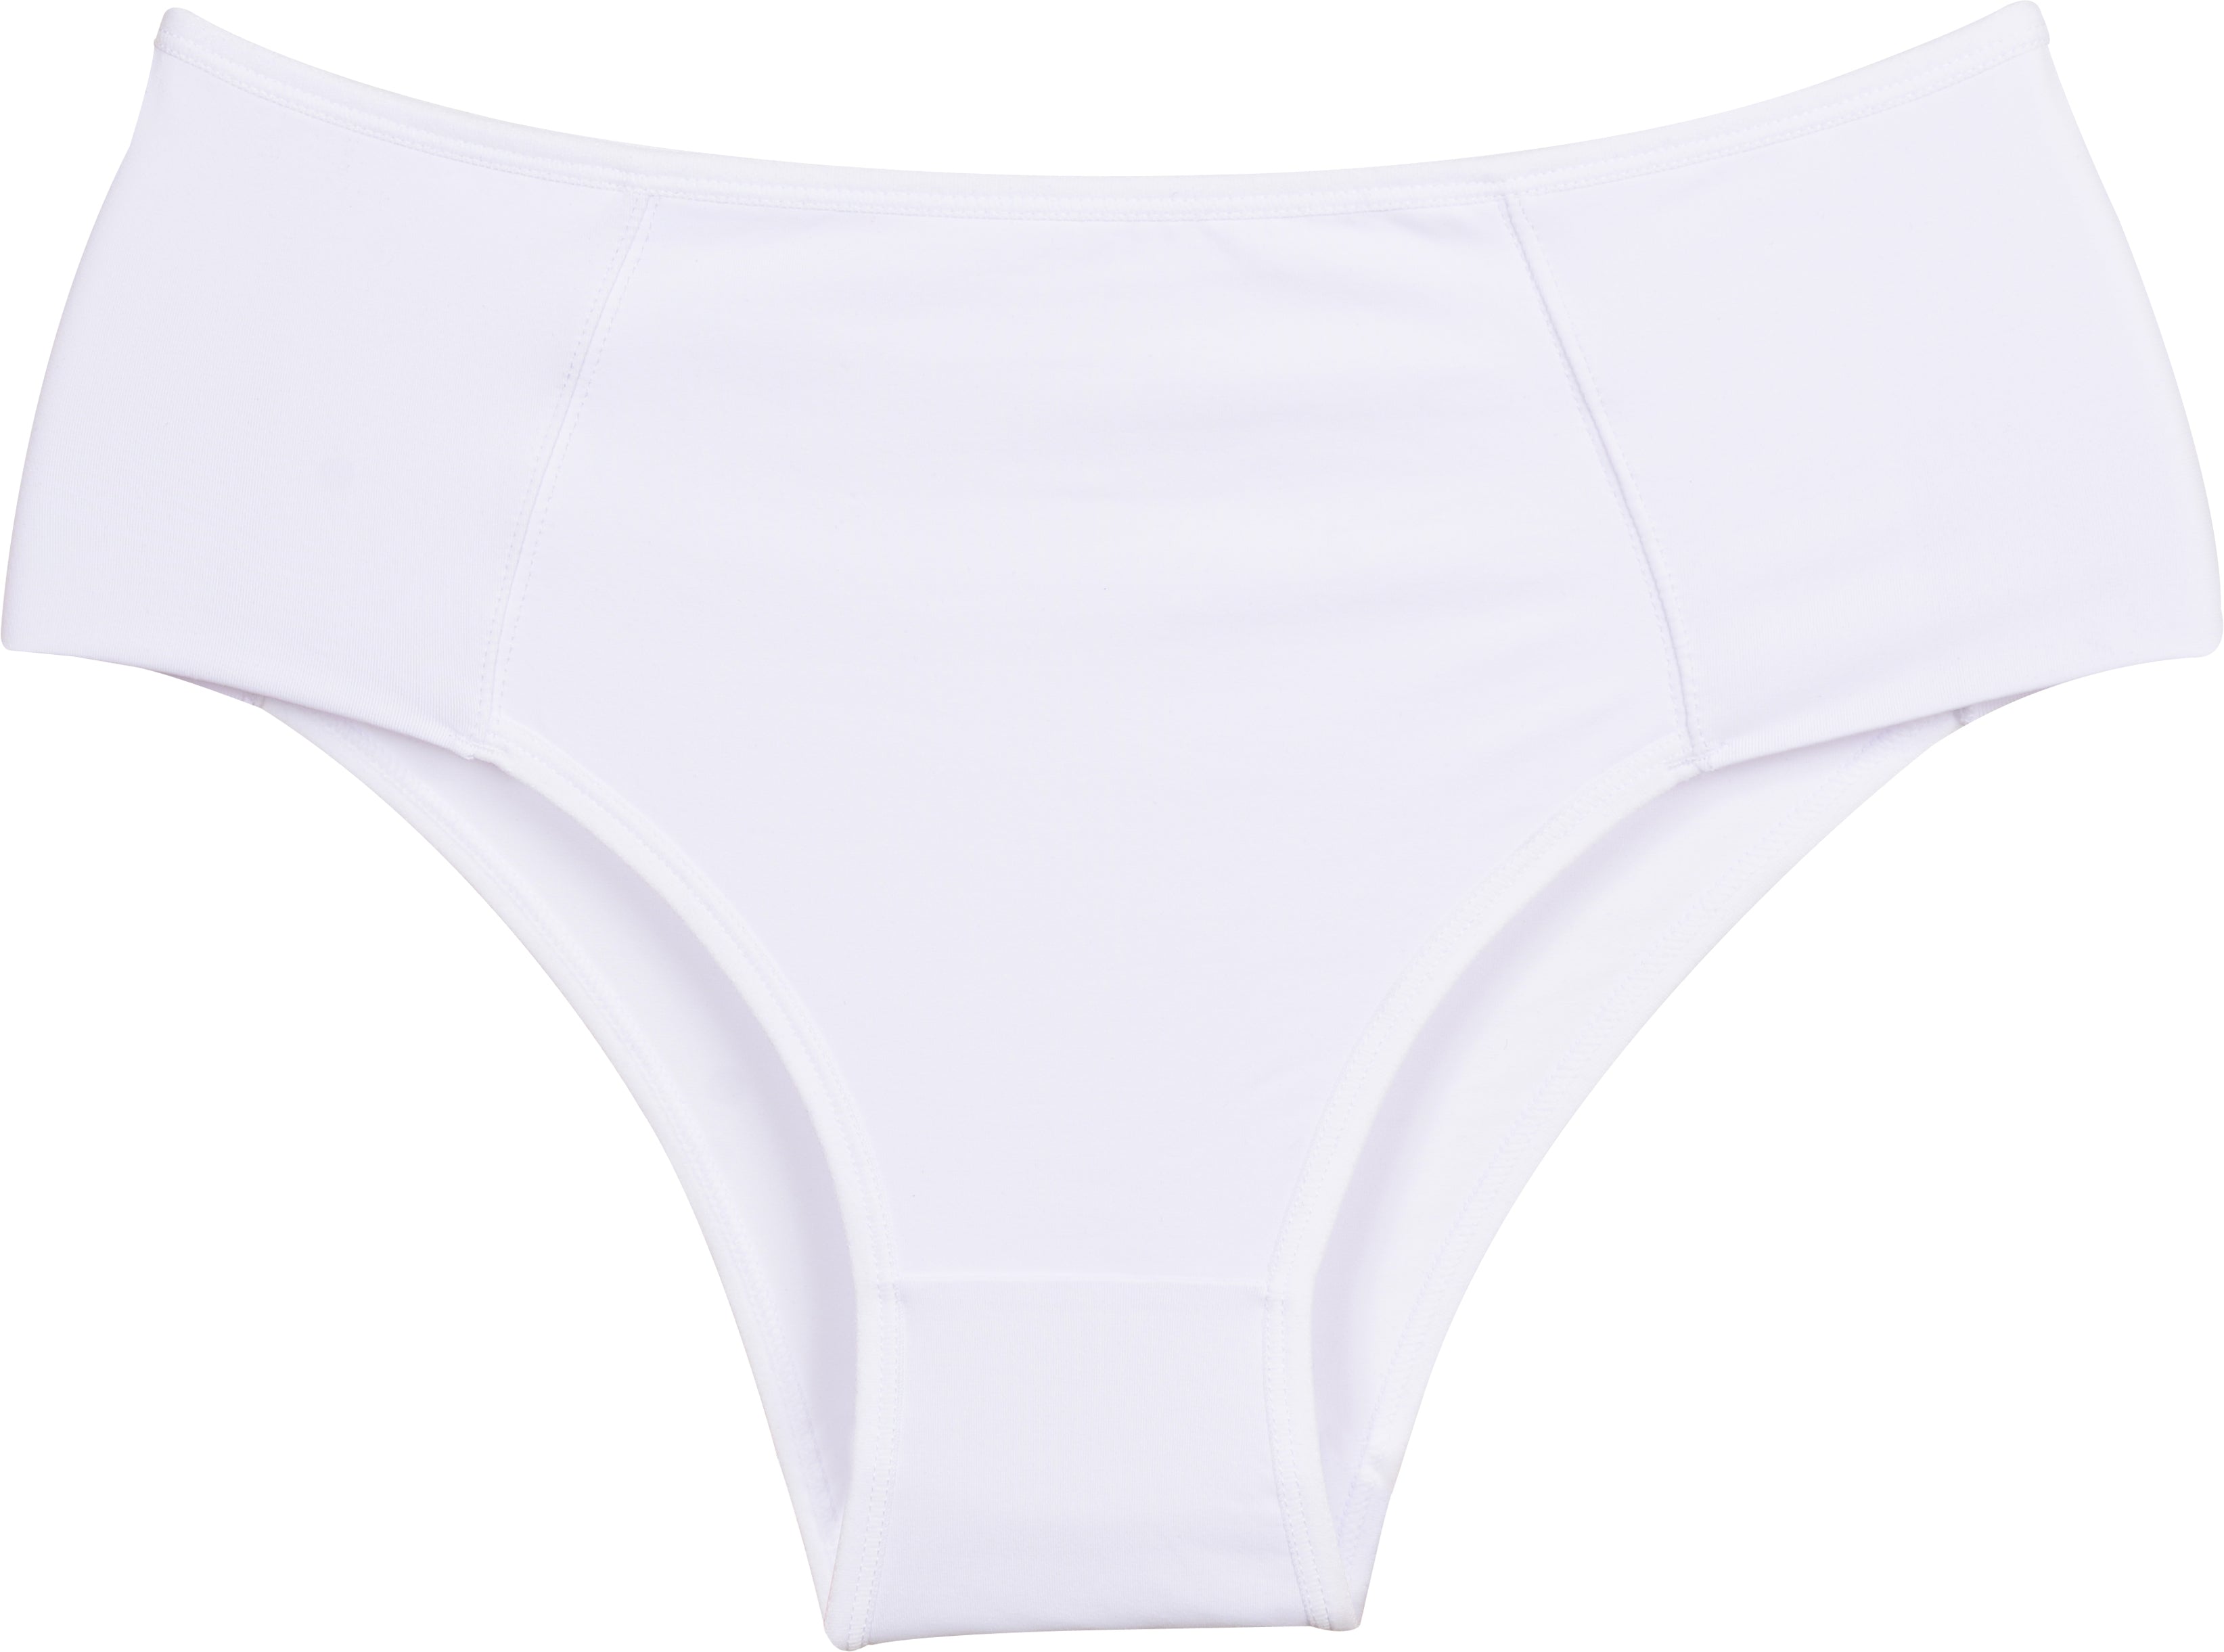  Rovga Underwear For Girls Womens Underwear High Cut